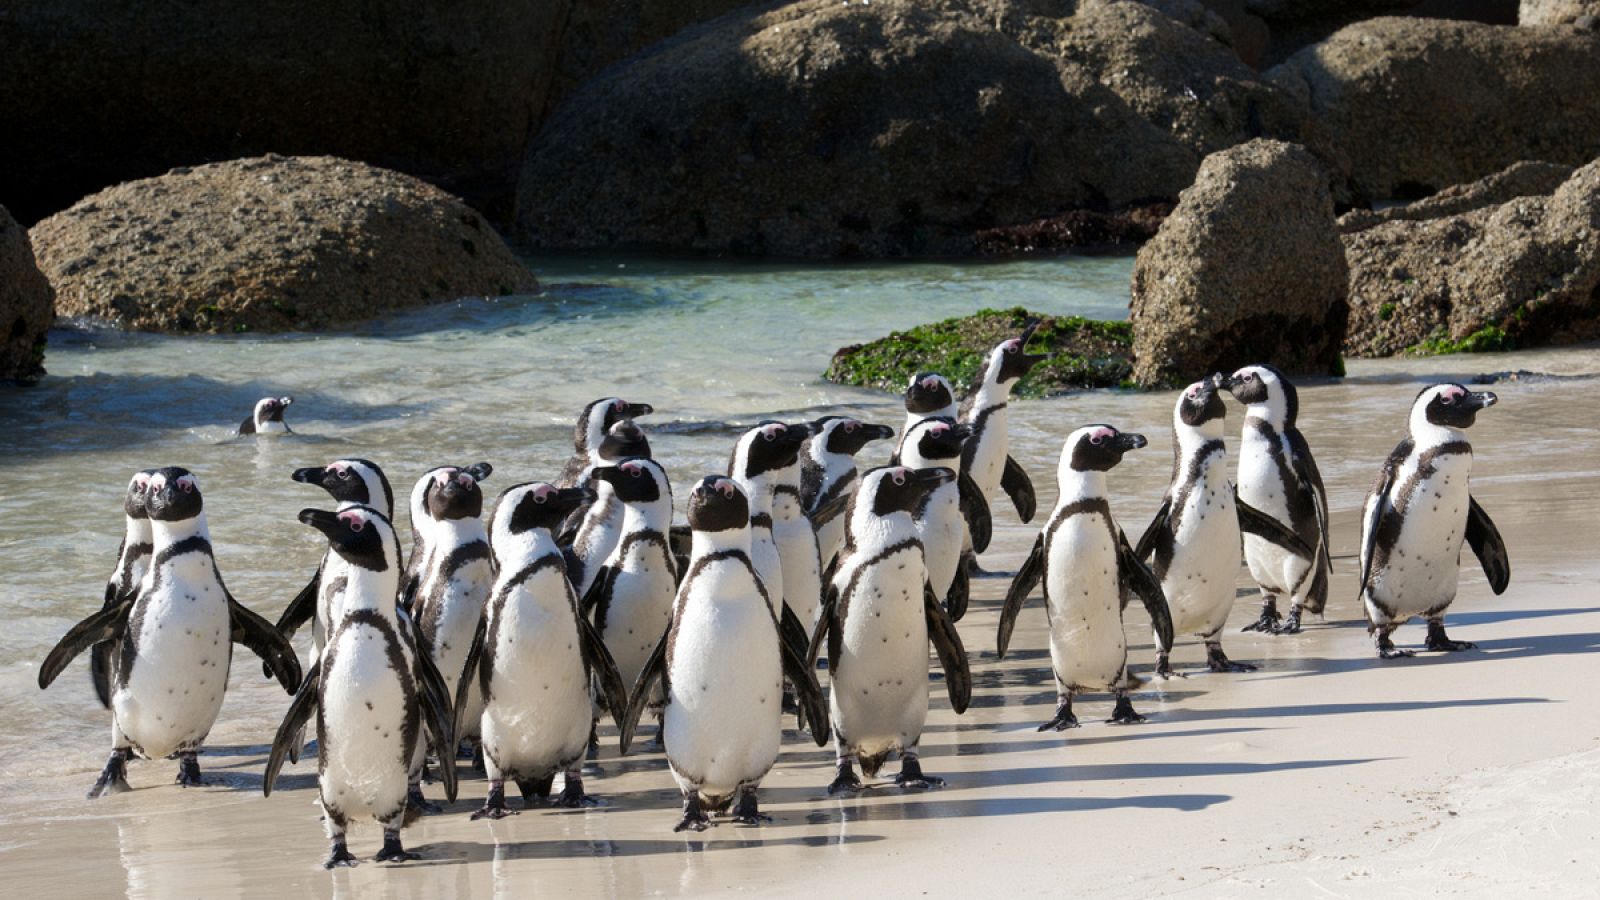 Colonia de pingüinos africanos (Spheniscus demersus), cerca de Ciudad del Cabo.